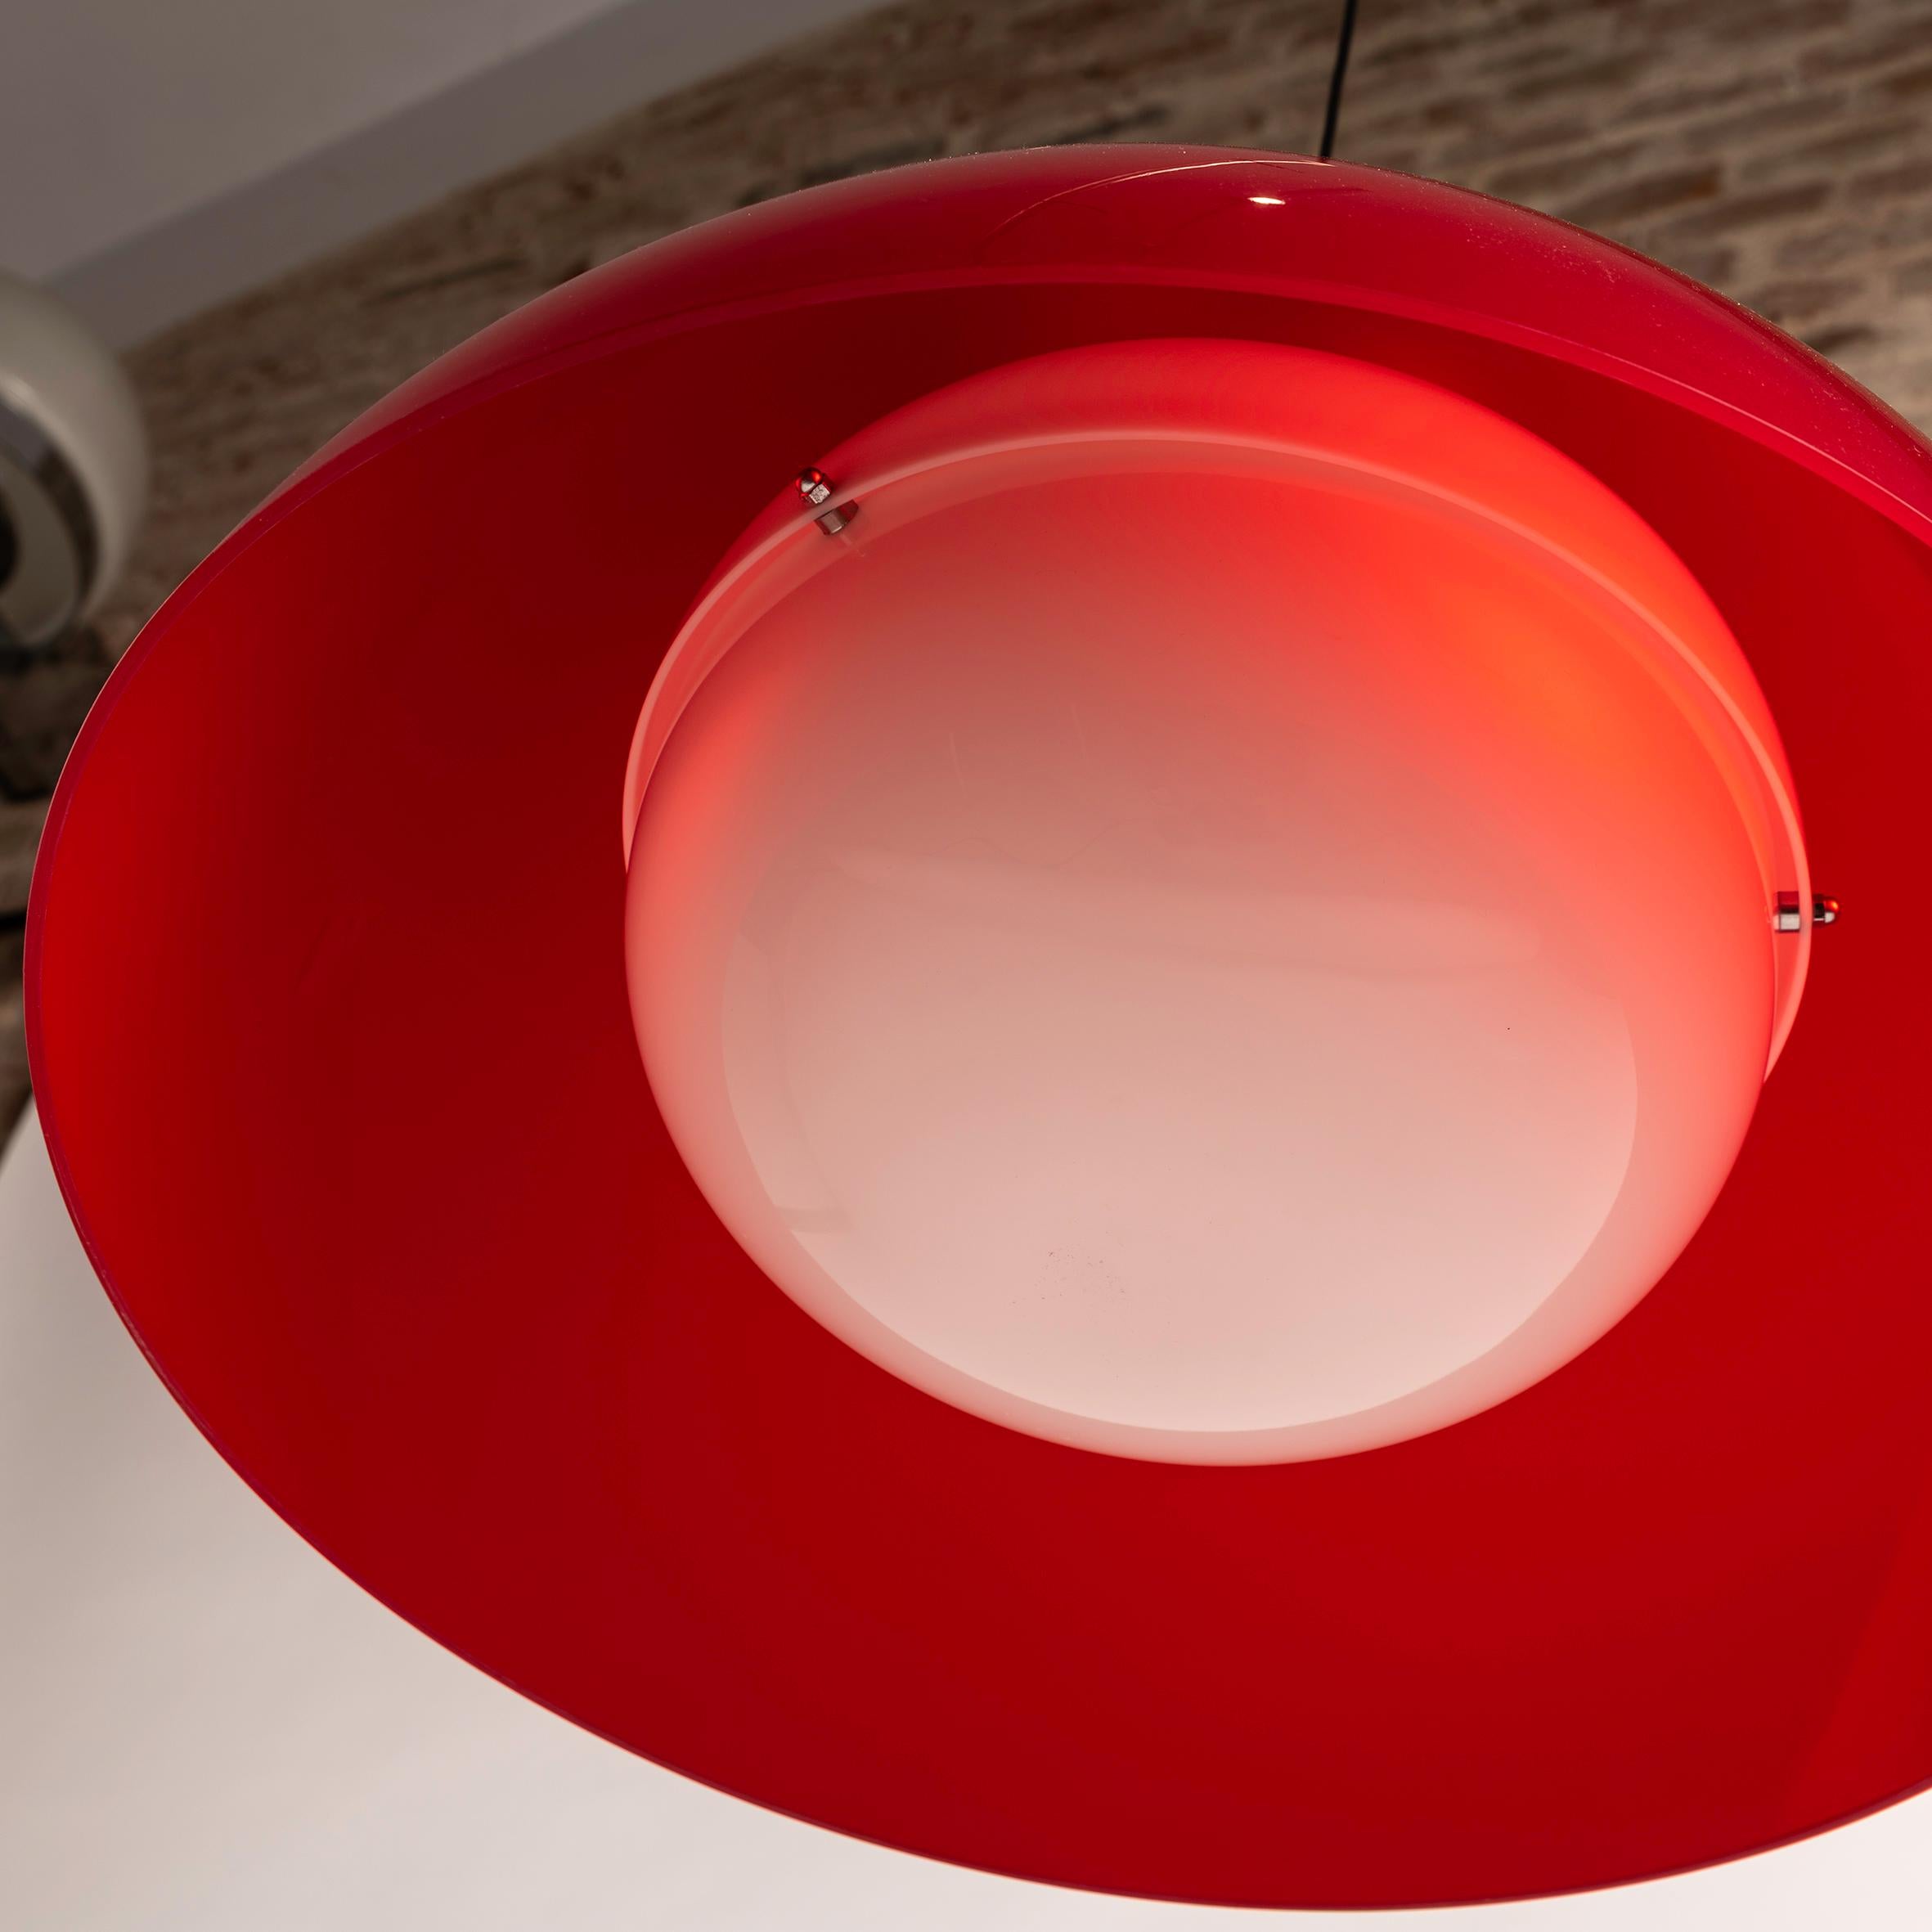 La lámpara colgante roja Kartell/Tramo KD6, diseñada por los legendarios Achille y Piergiacomo Castiglioni, personifica la elegancia atemporal y el diseño innovador. Realizada en colaboración con Tramo, esta lámpara colgante es una sorprendente